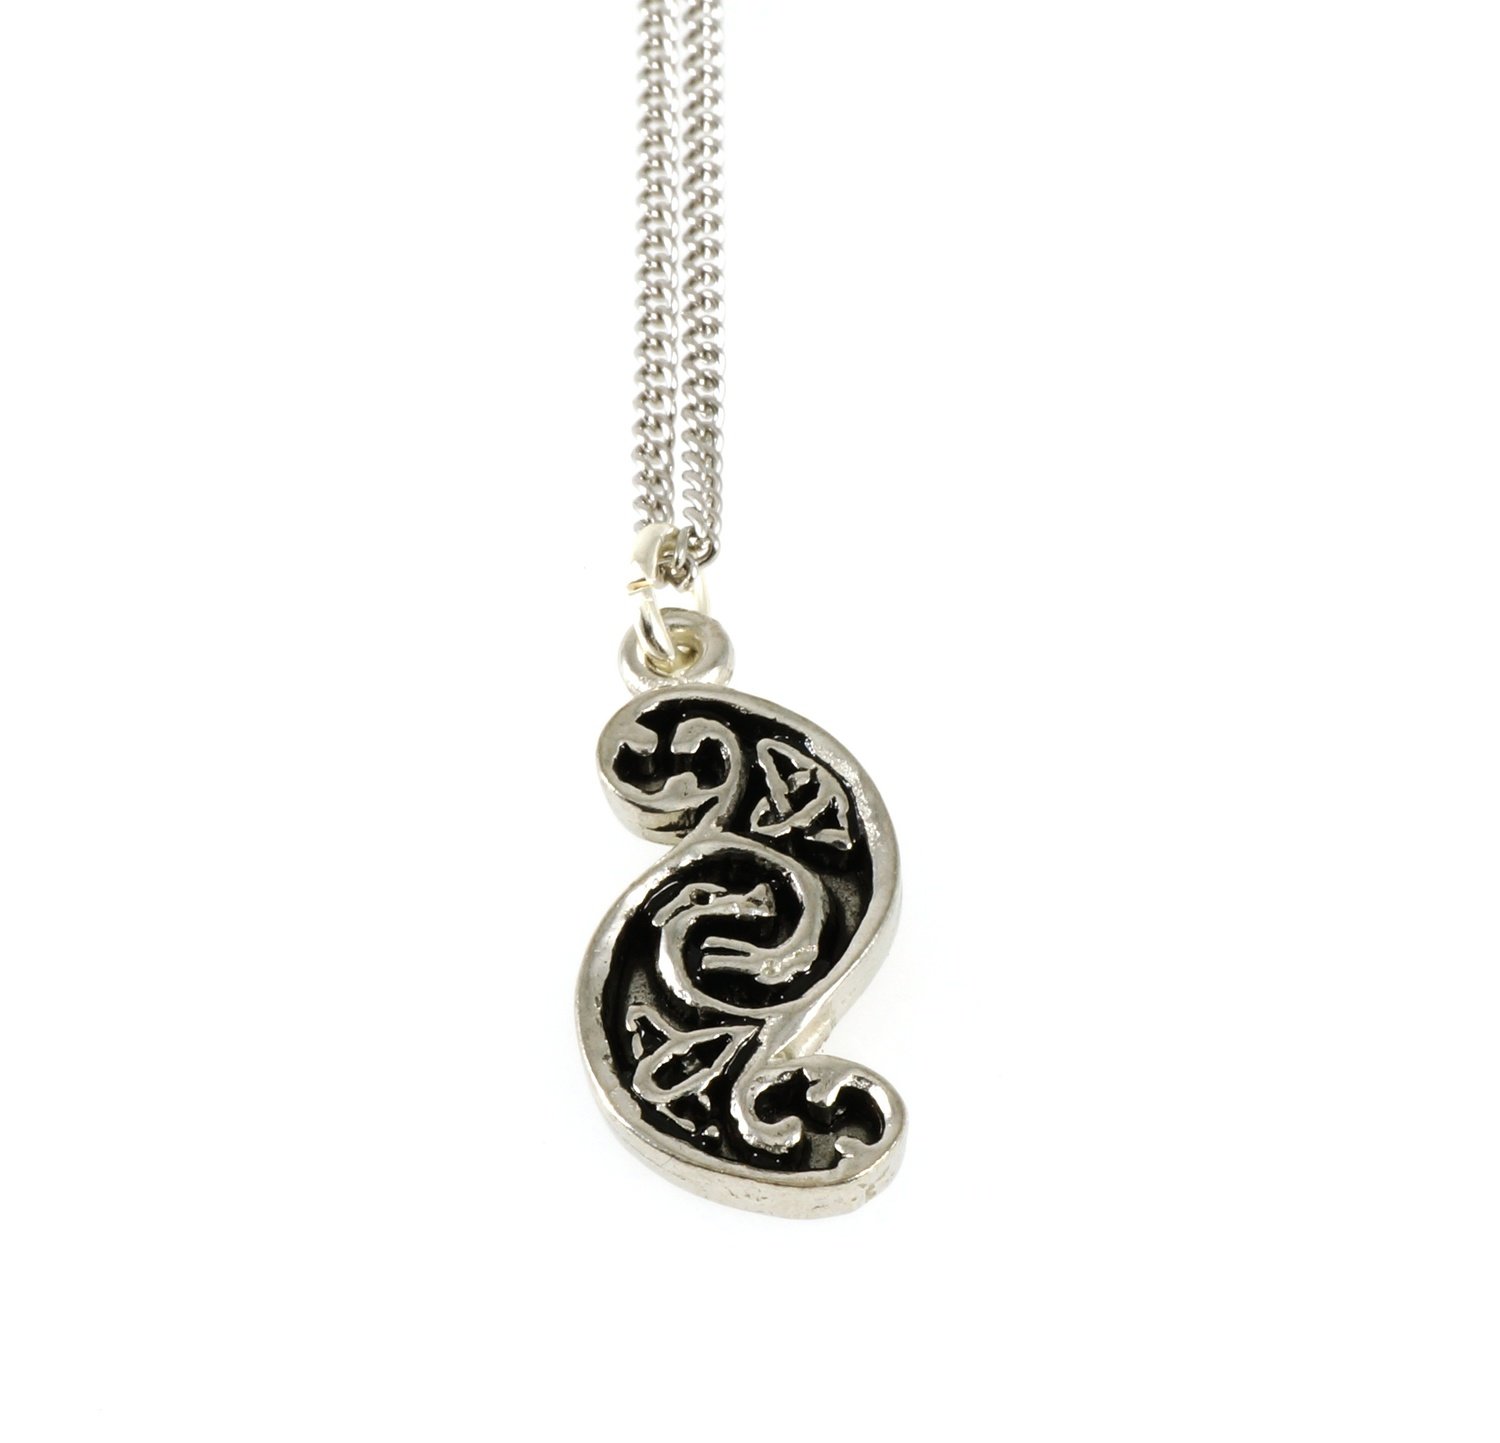 S-Shaped Celtic Design Handmade Pewter Chain Pendant